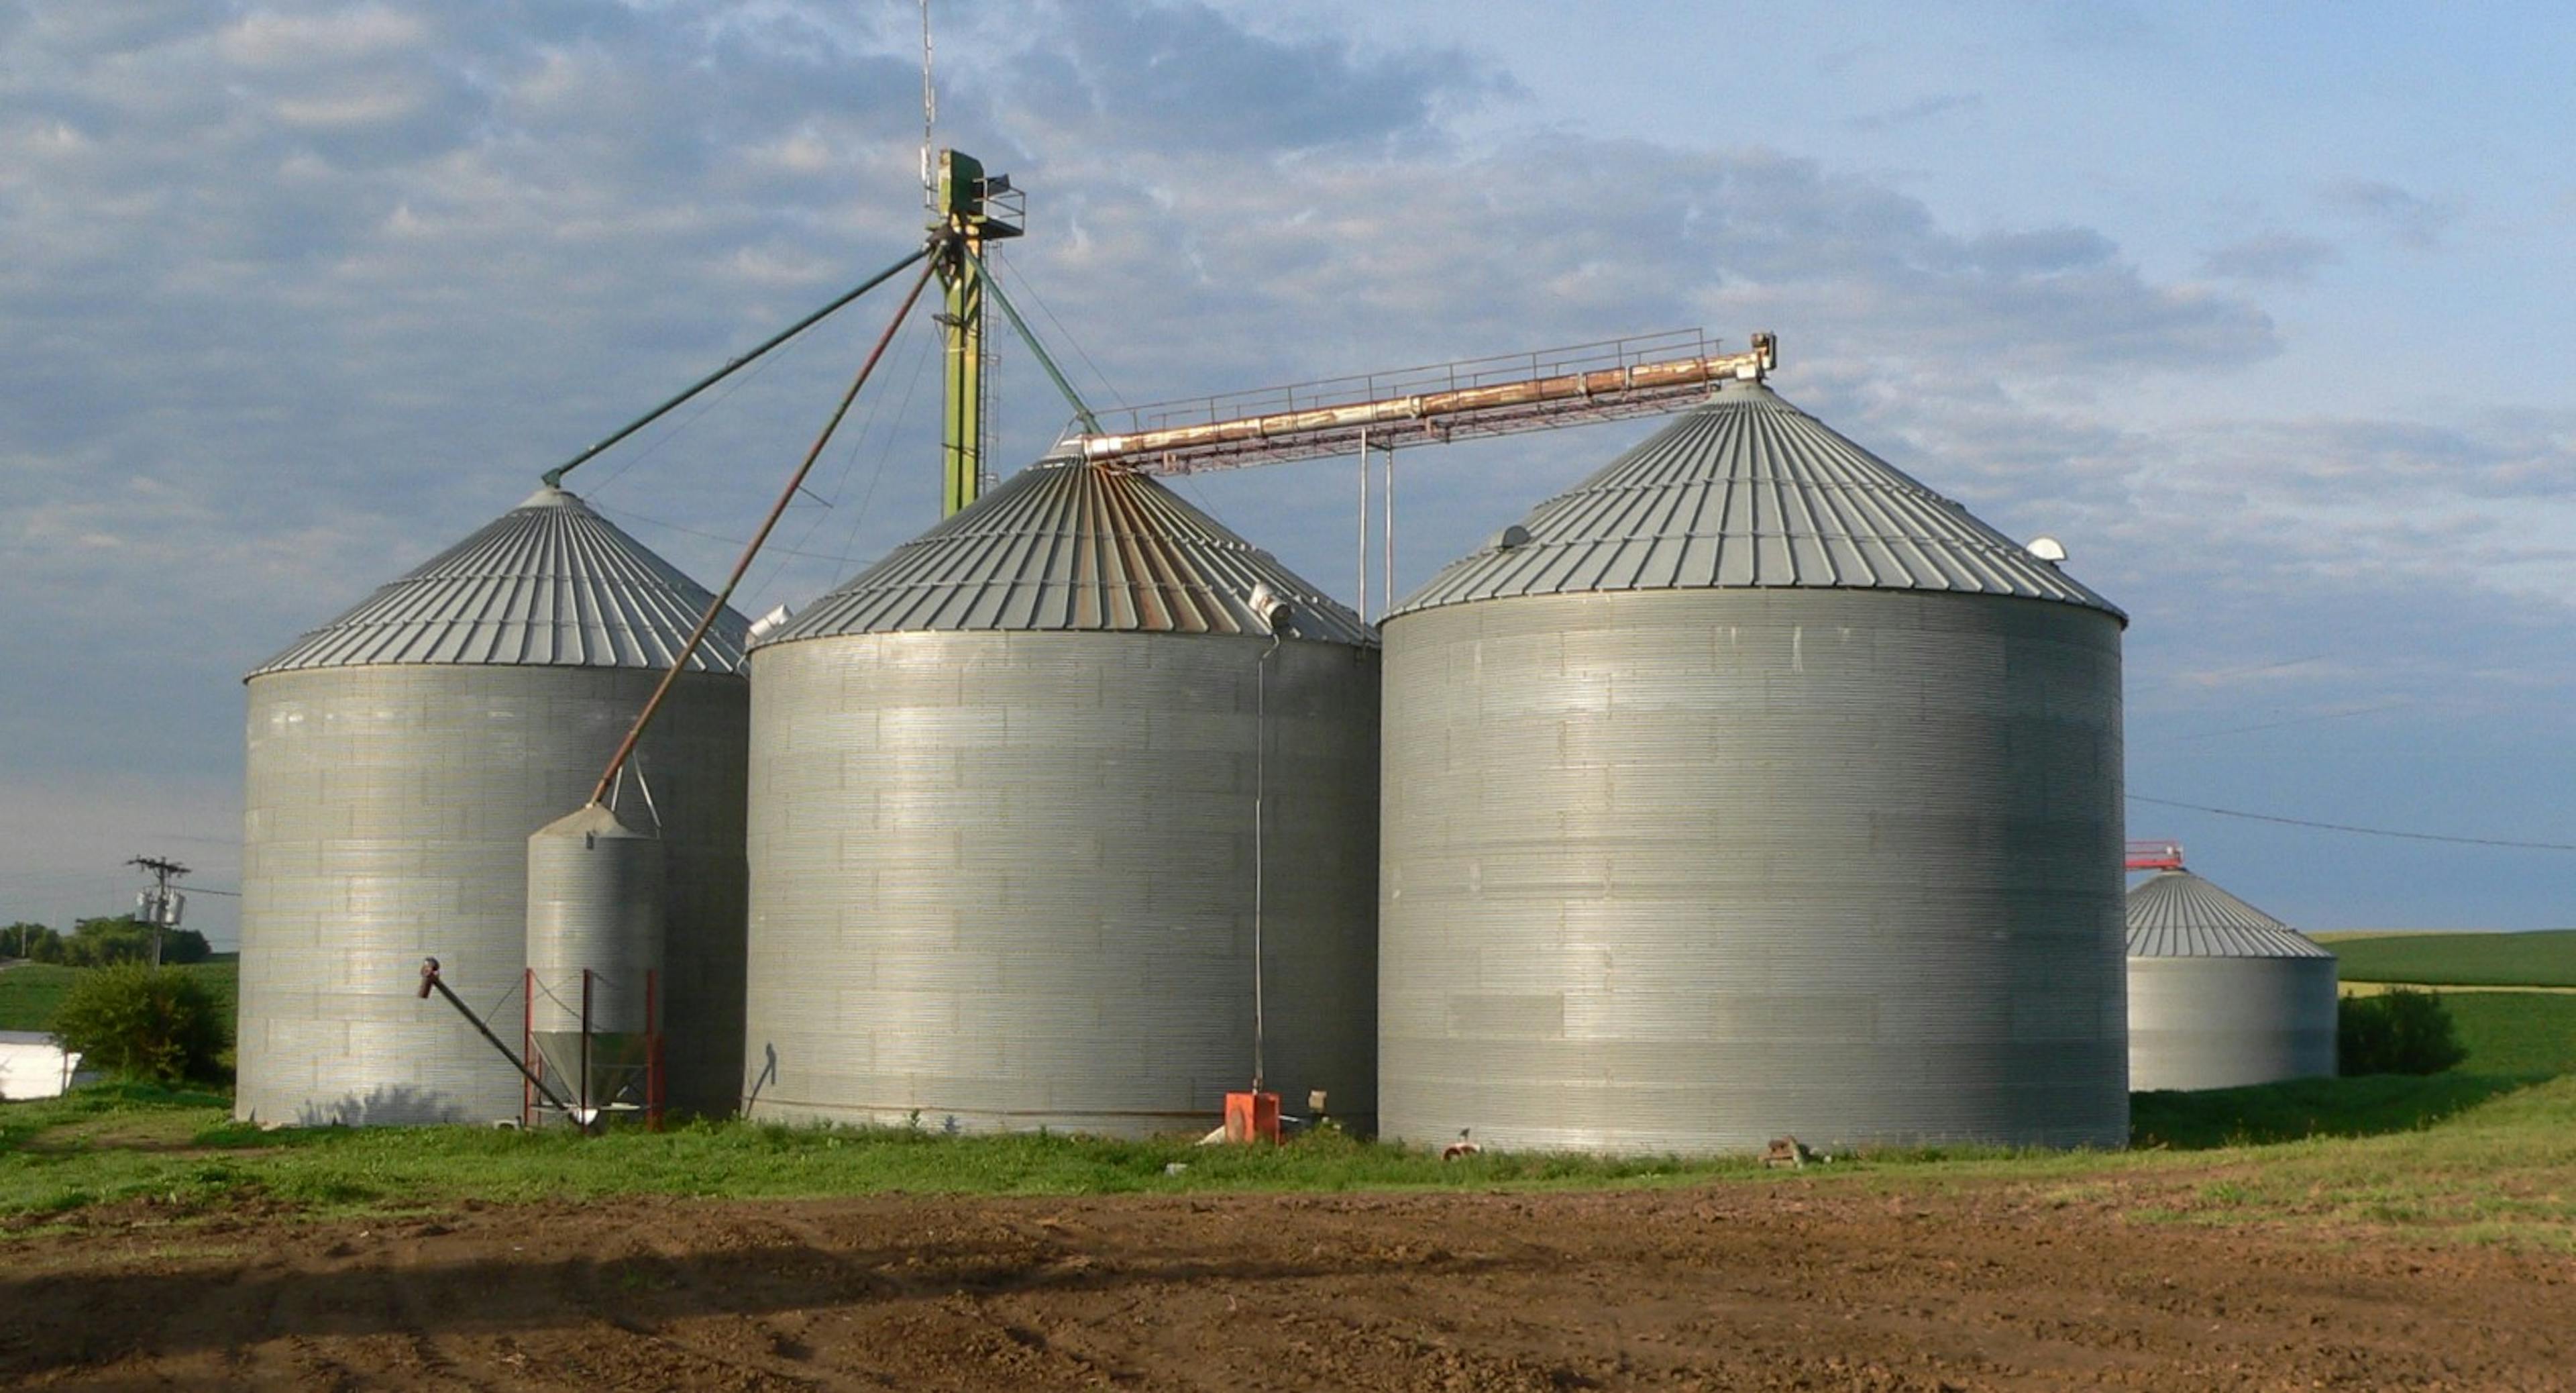 /how-a-north-dakota-farmer-built-an-iot-driven-farm-99a0ecc56f10 feature image